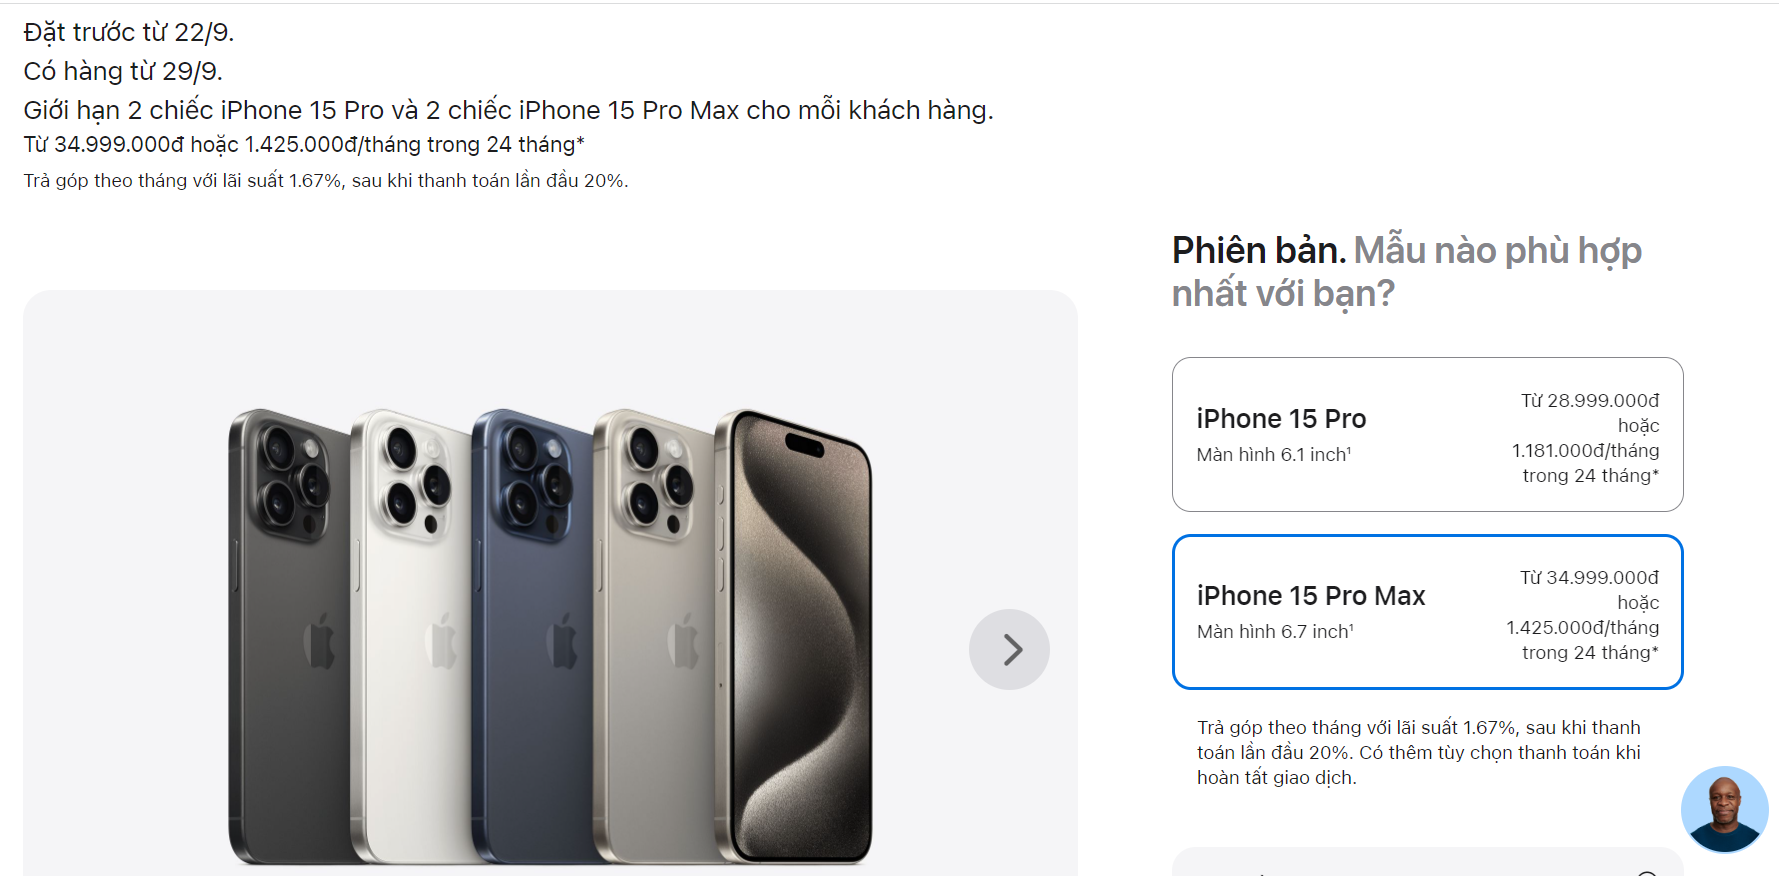 Giá iPhone 15 Pro và iPhone 15 Pro Max